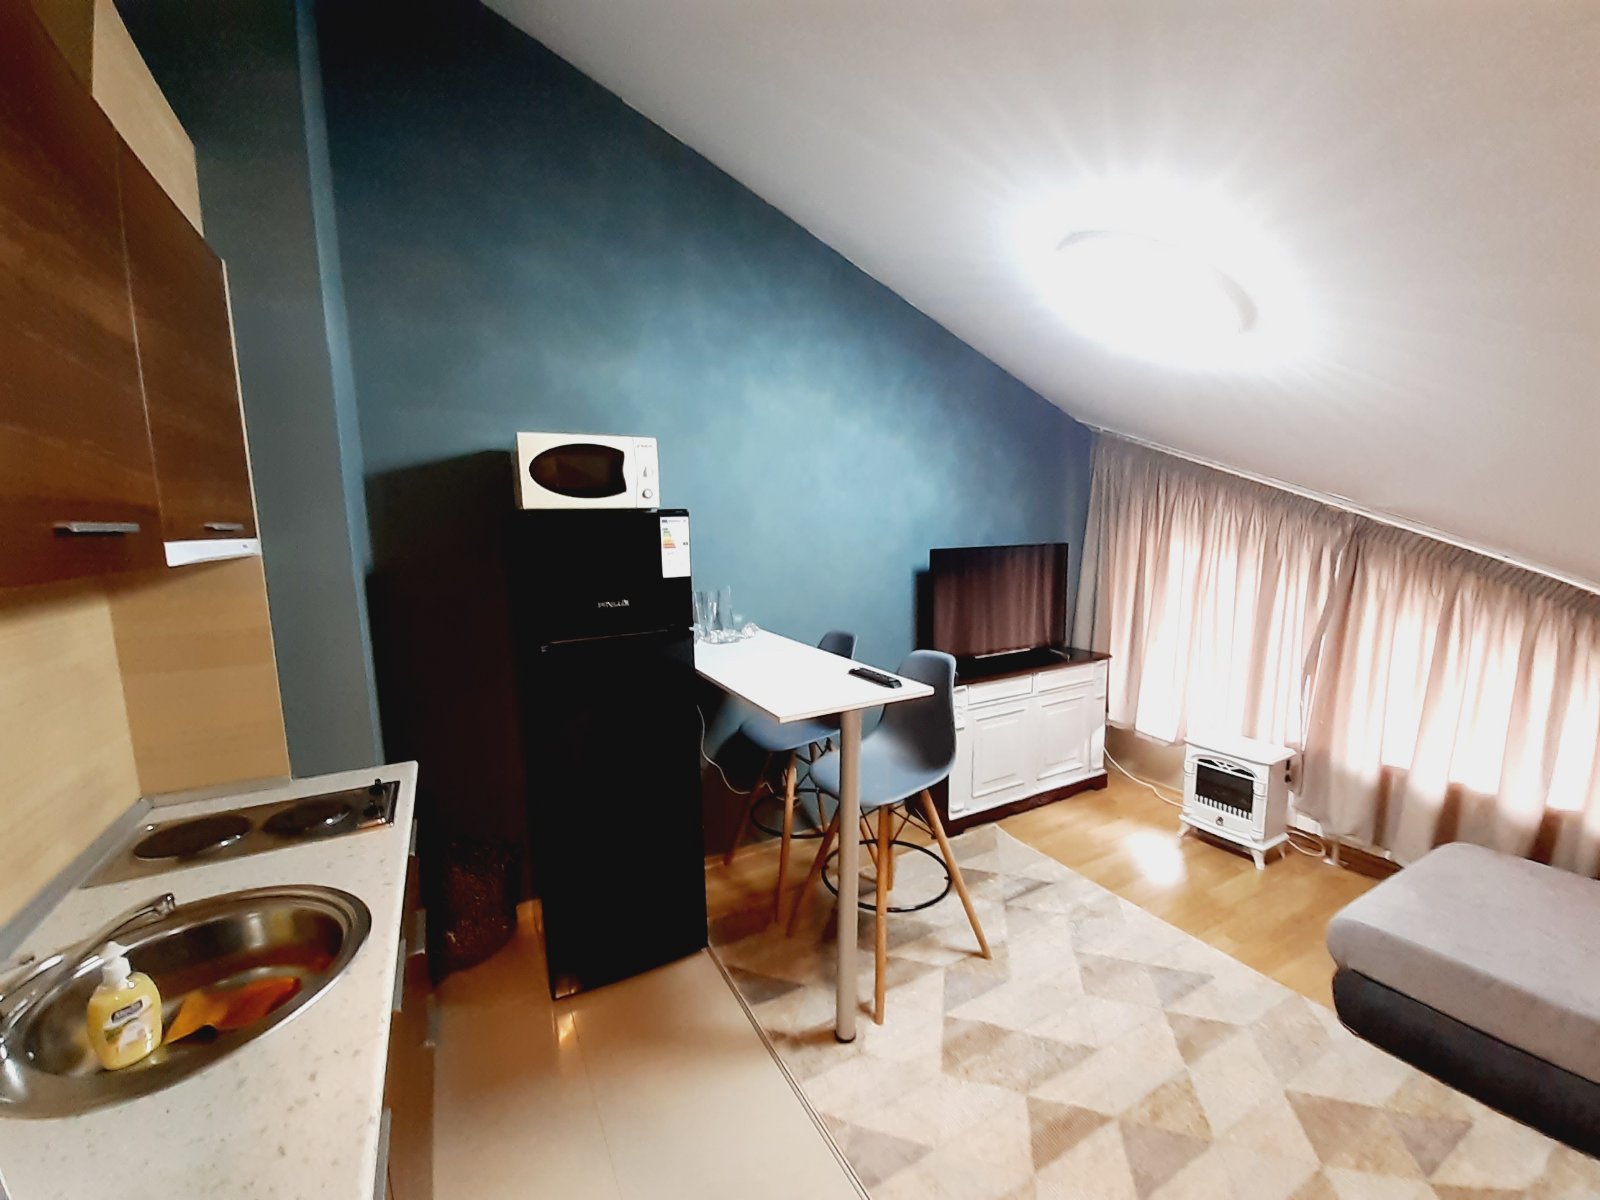 Ски зона, Банско: Маломерен двустаен апартамент с ниска такса поддръжка